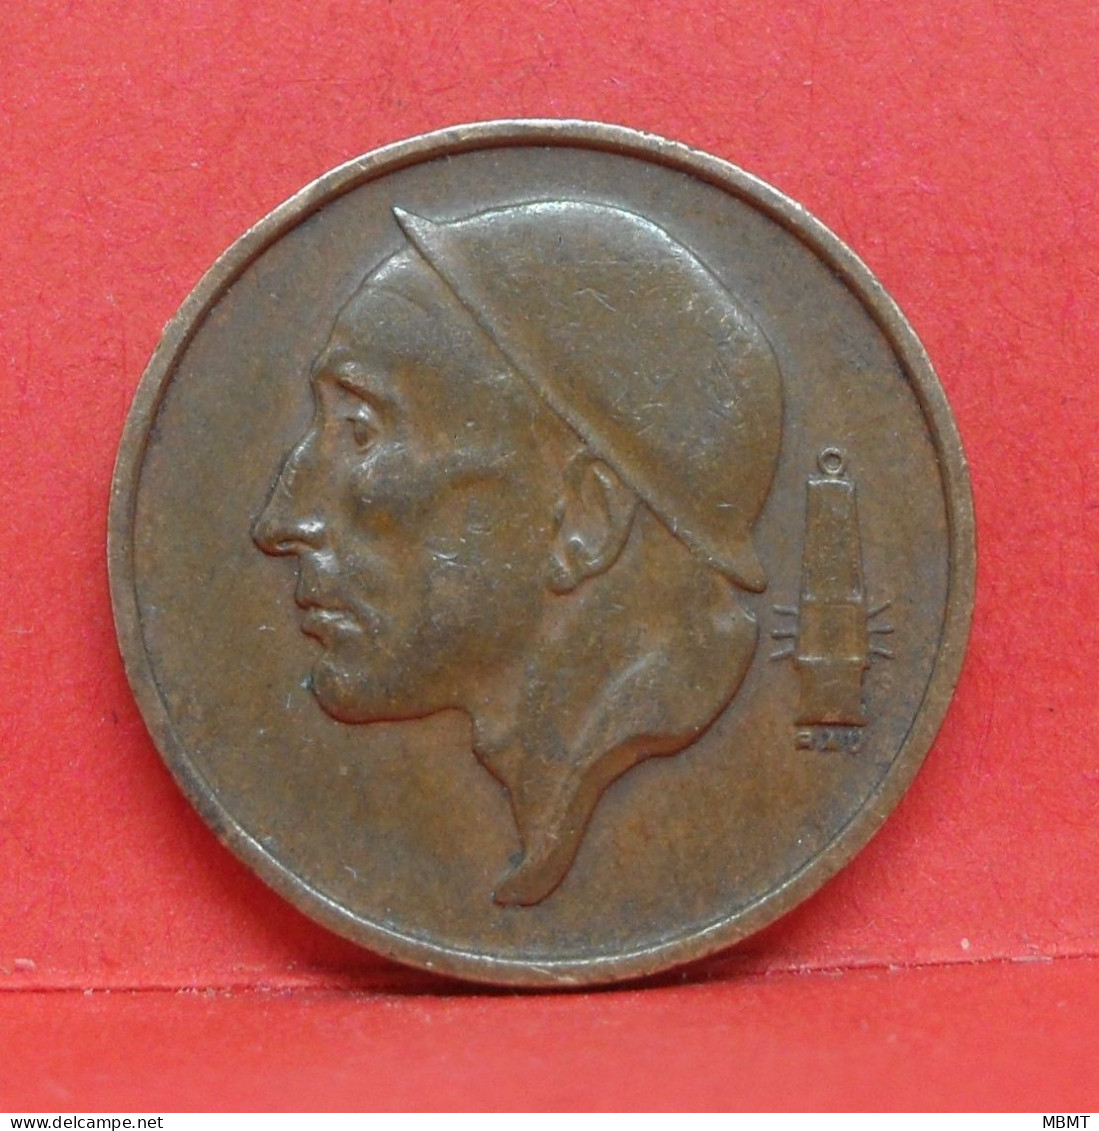 50 Centimes 1956 - TTB - Pièce Monnaie Belgie - Article N°1878 - 50 Cents